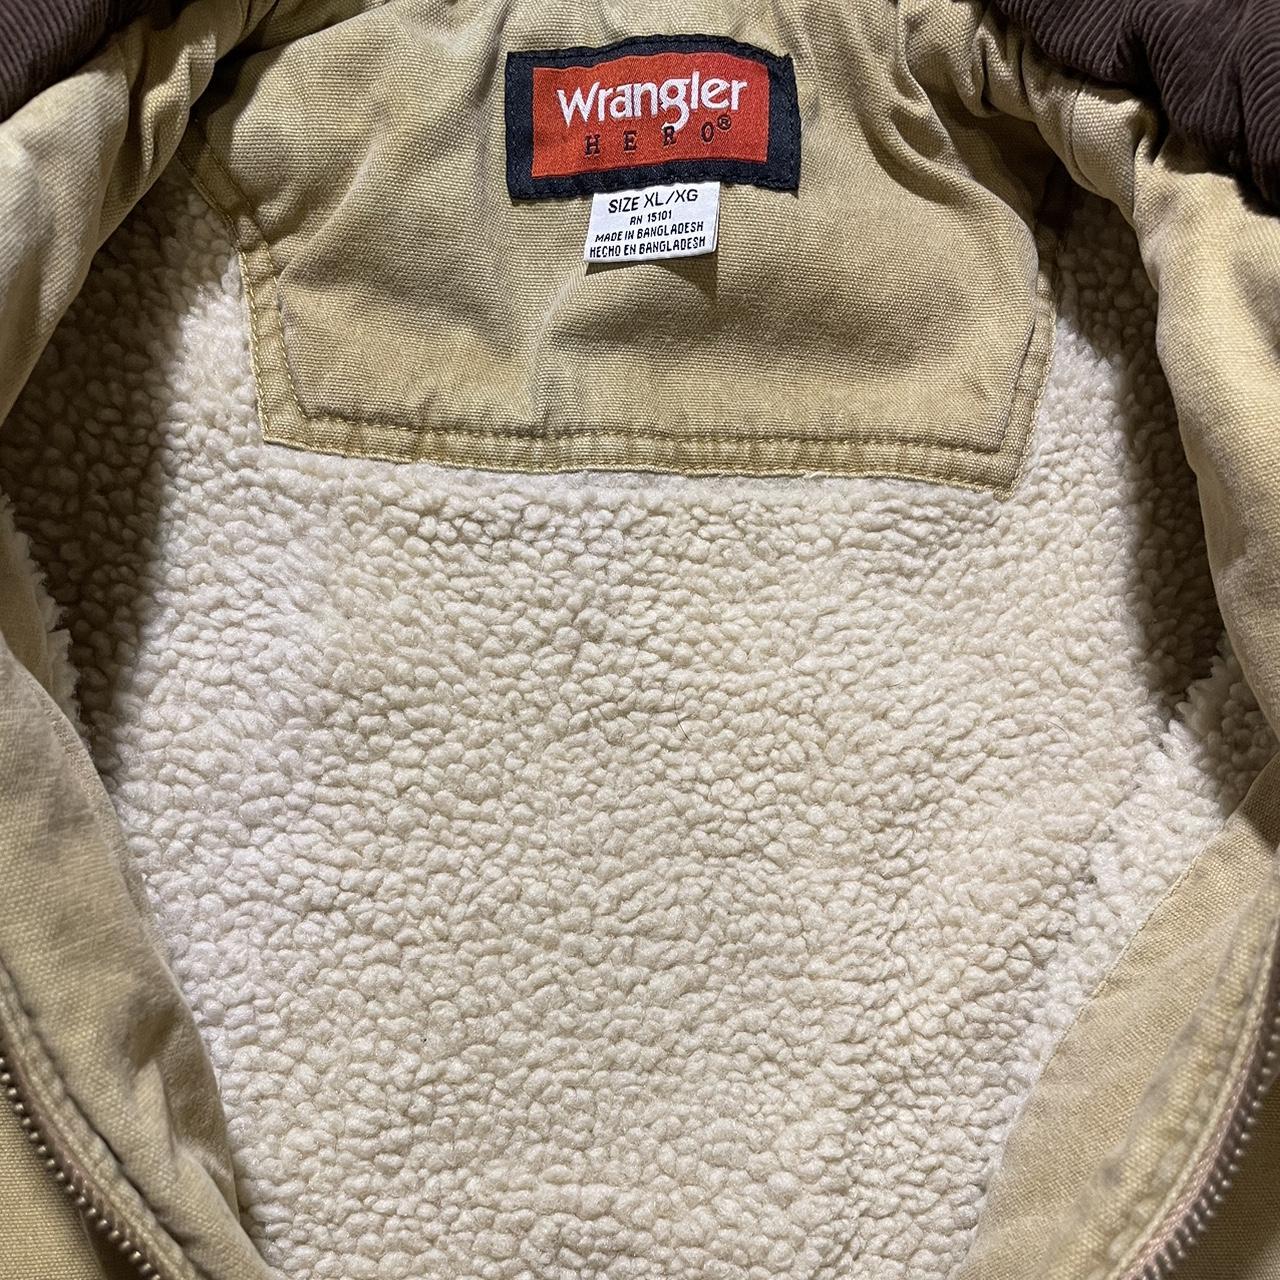 Wrangler Hero Sherpa lined vest Super soft and... - Depop